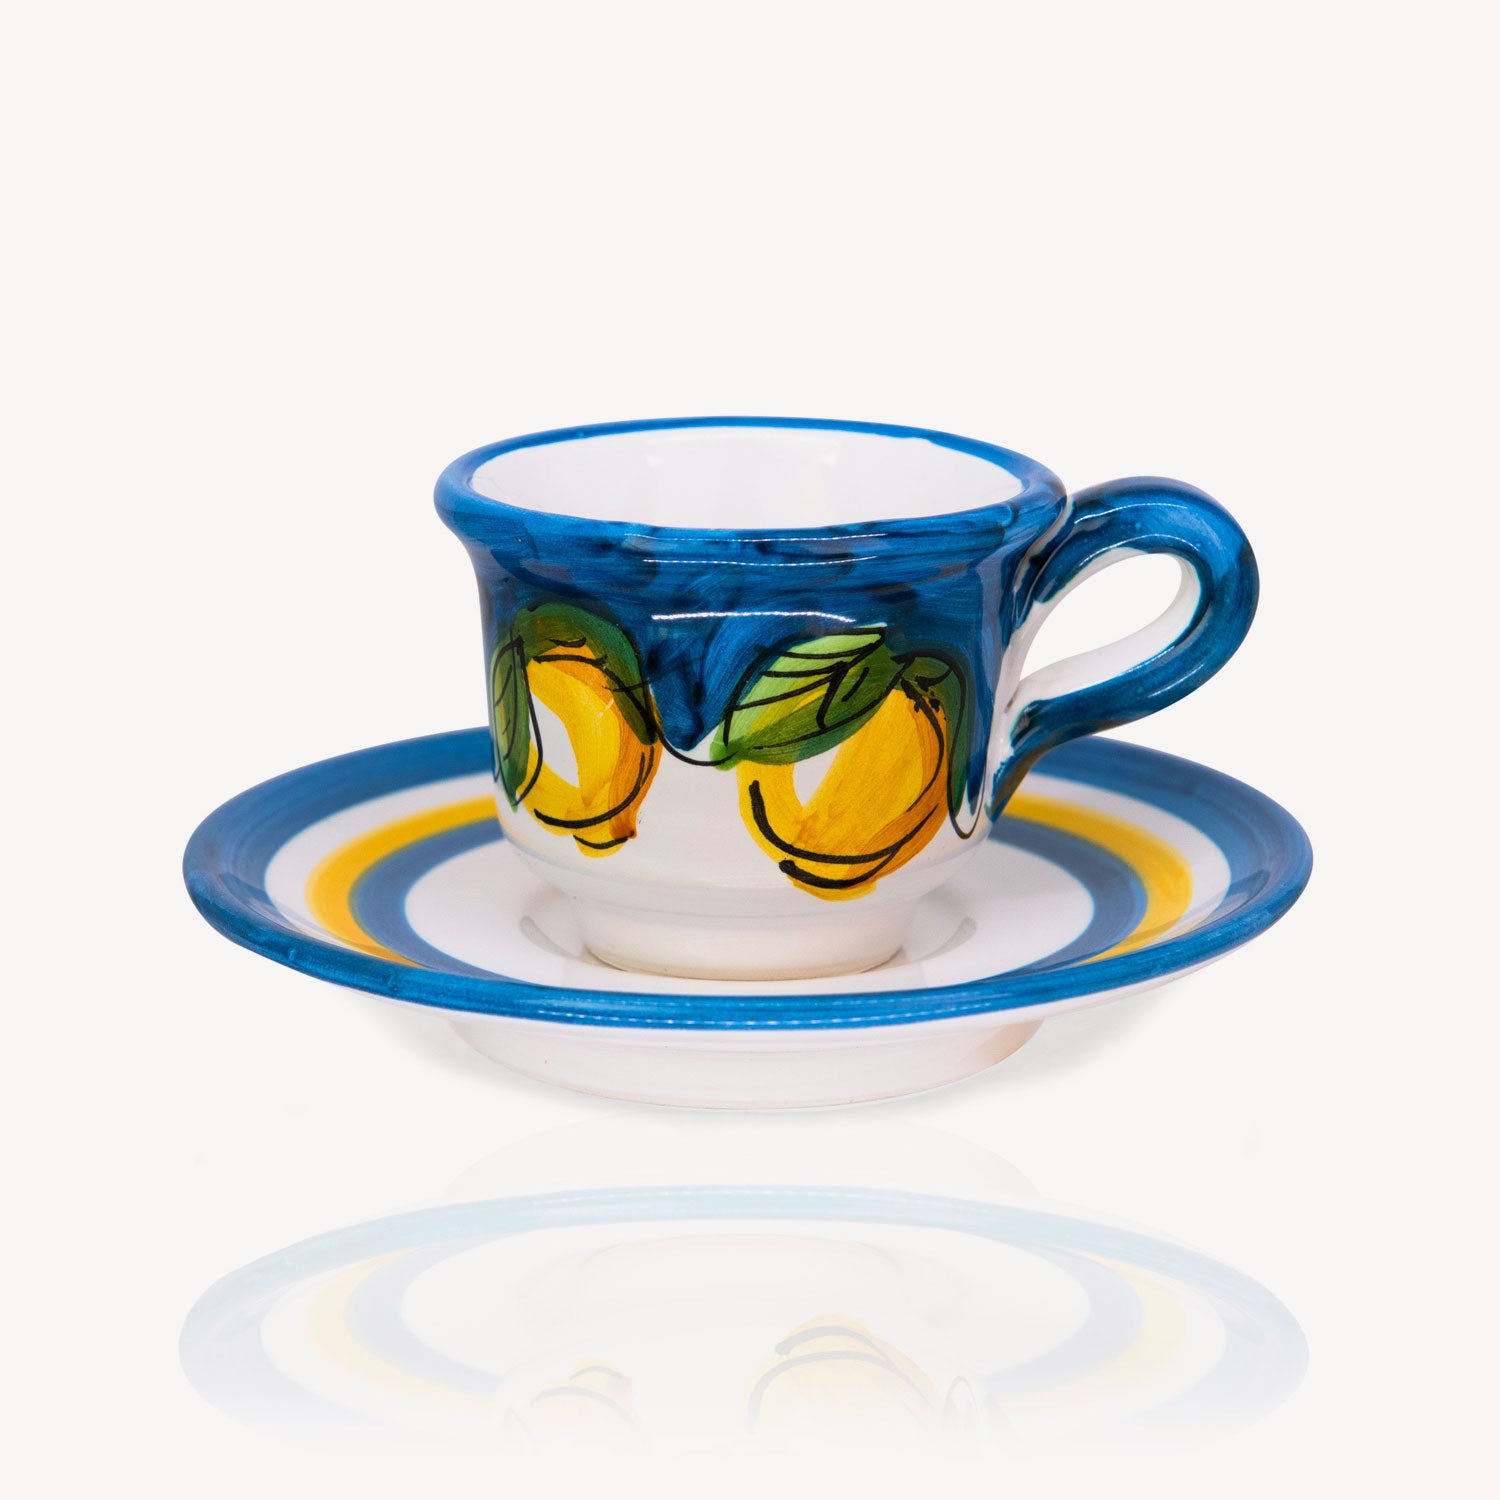 Italian Ceramic Espresso Cup